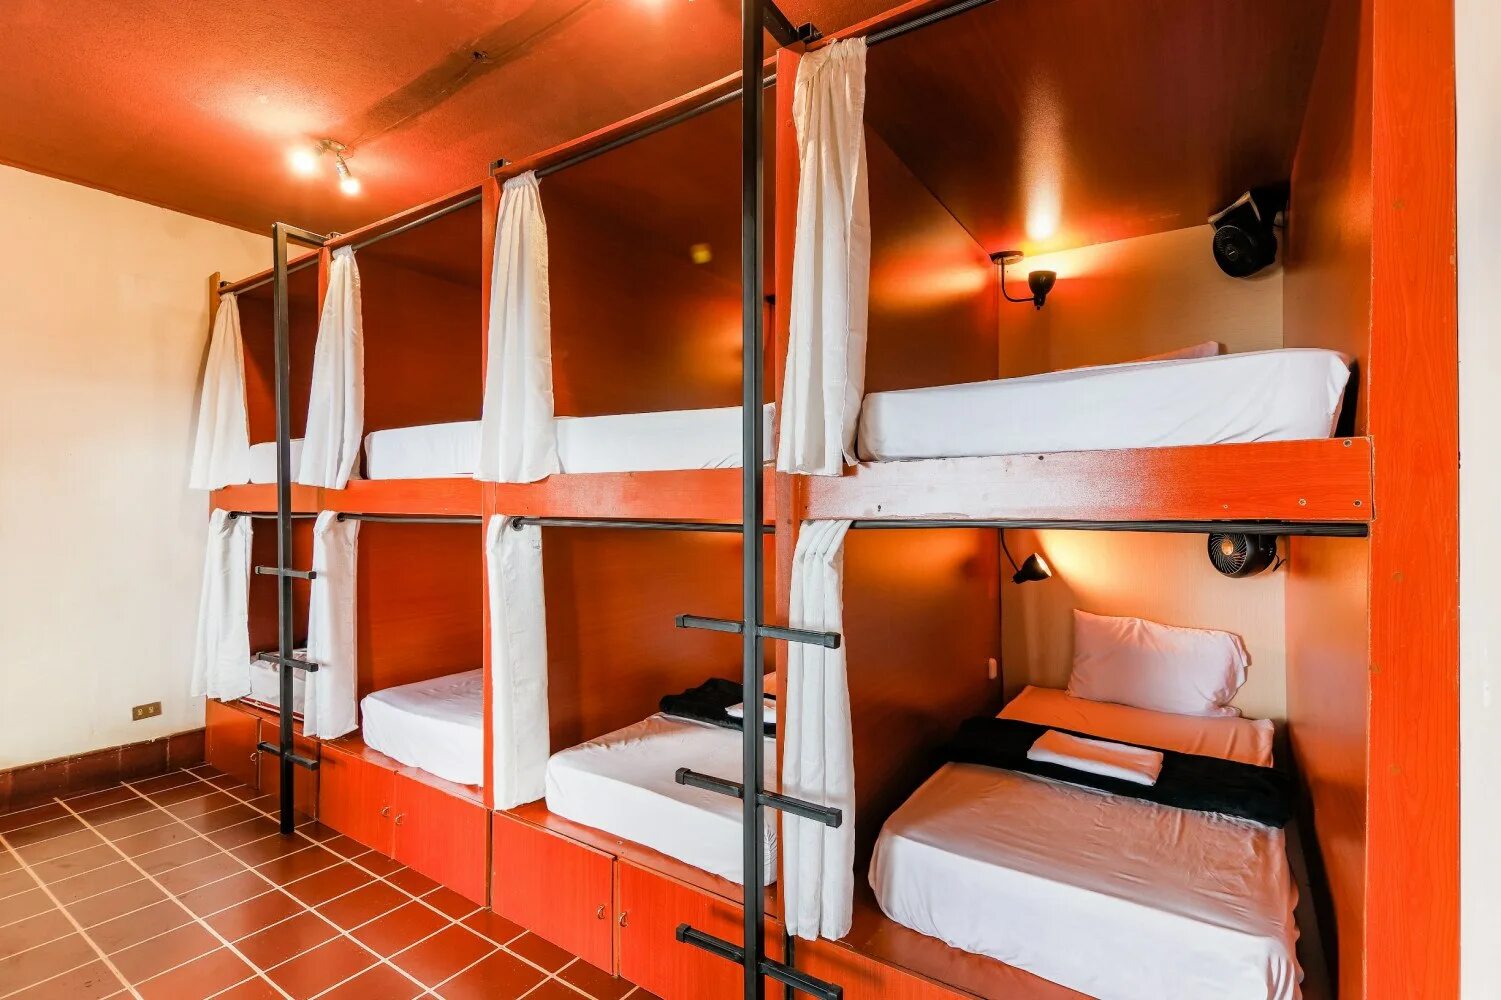 Капсульный хостел МСК. Двухъярусные кровати для хостелов. Капсульные кровати для хостела. Капсулы для хостела. Оборудование общежития